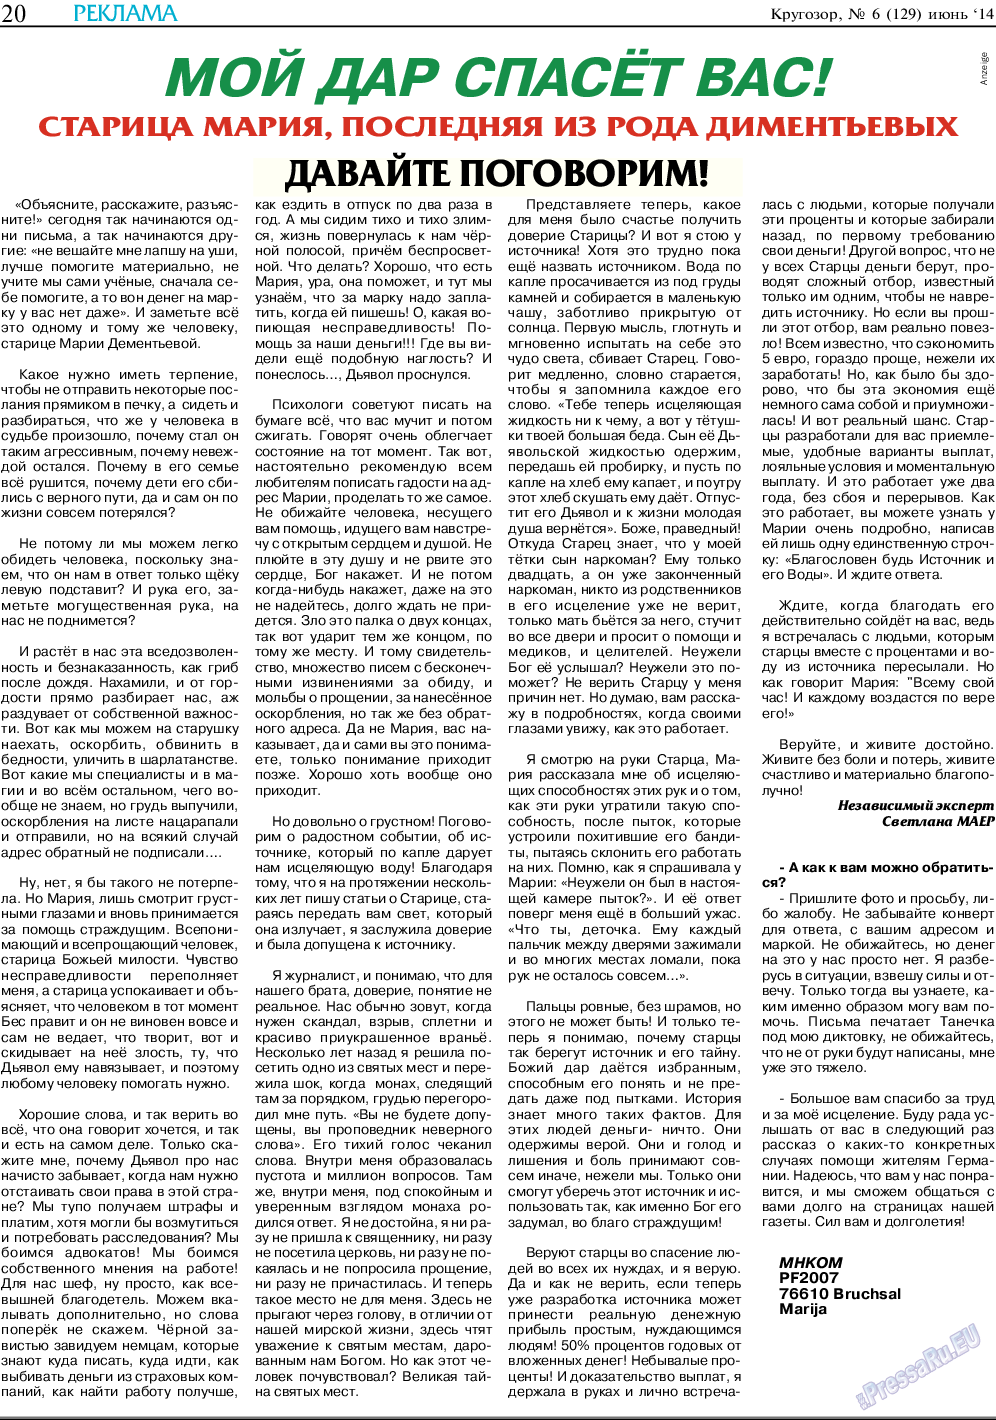 Кругозор, газета. 2014 №6 стр.20